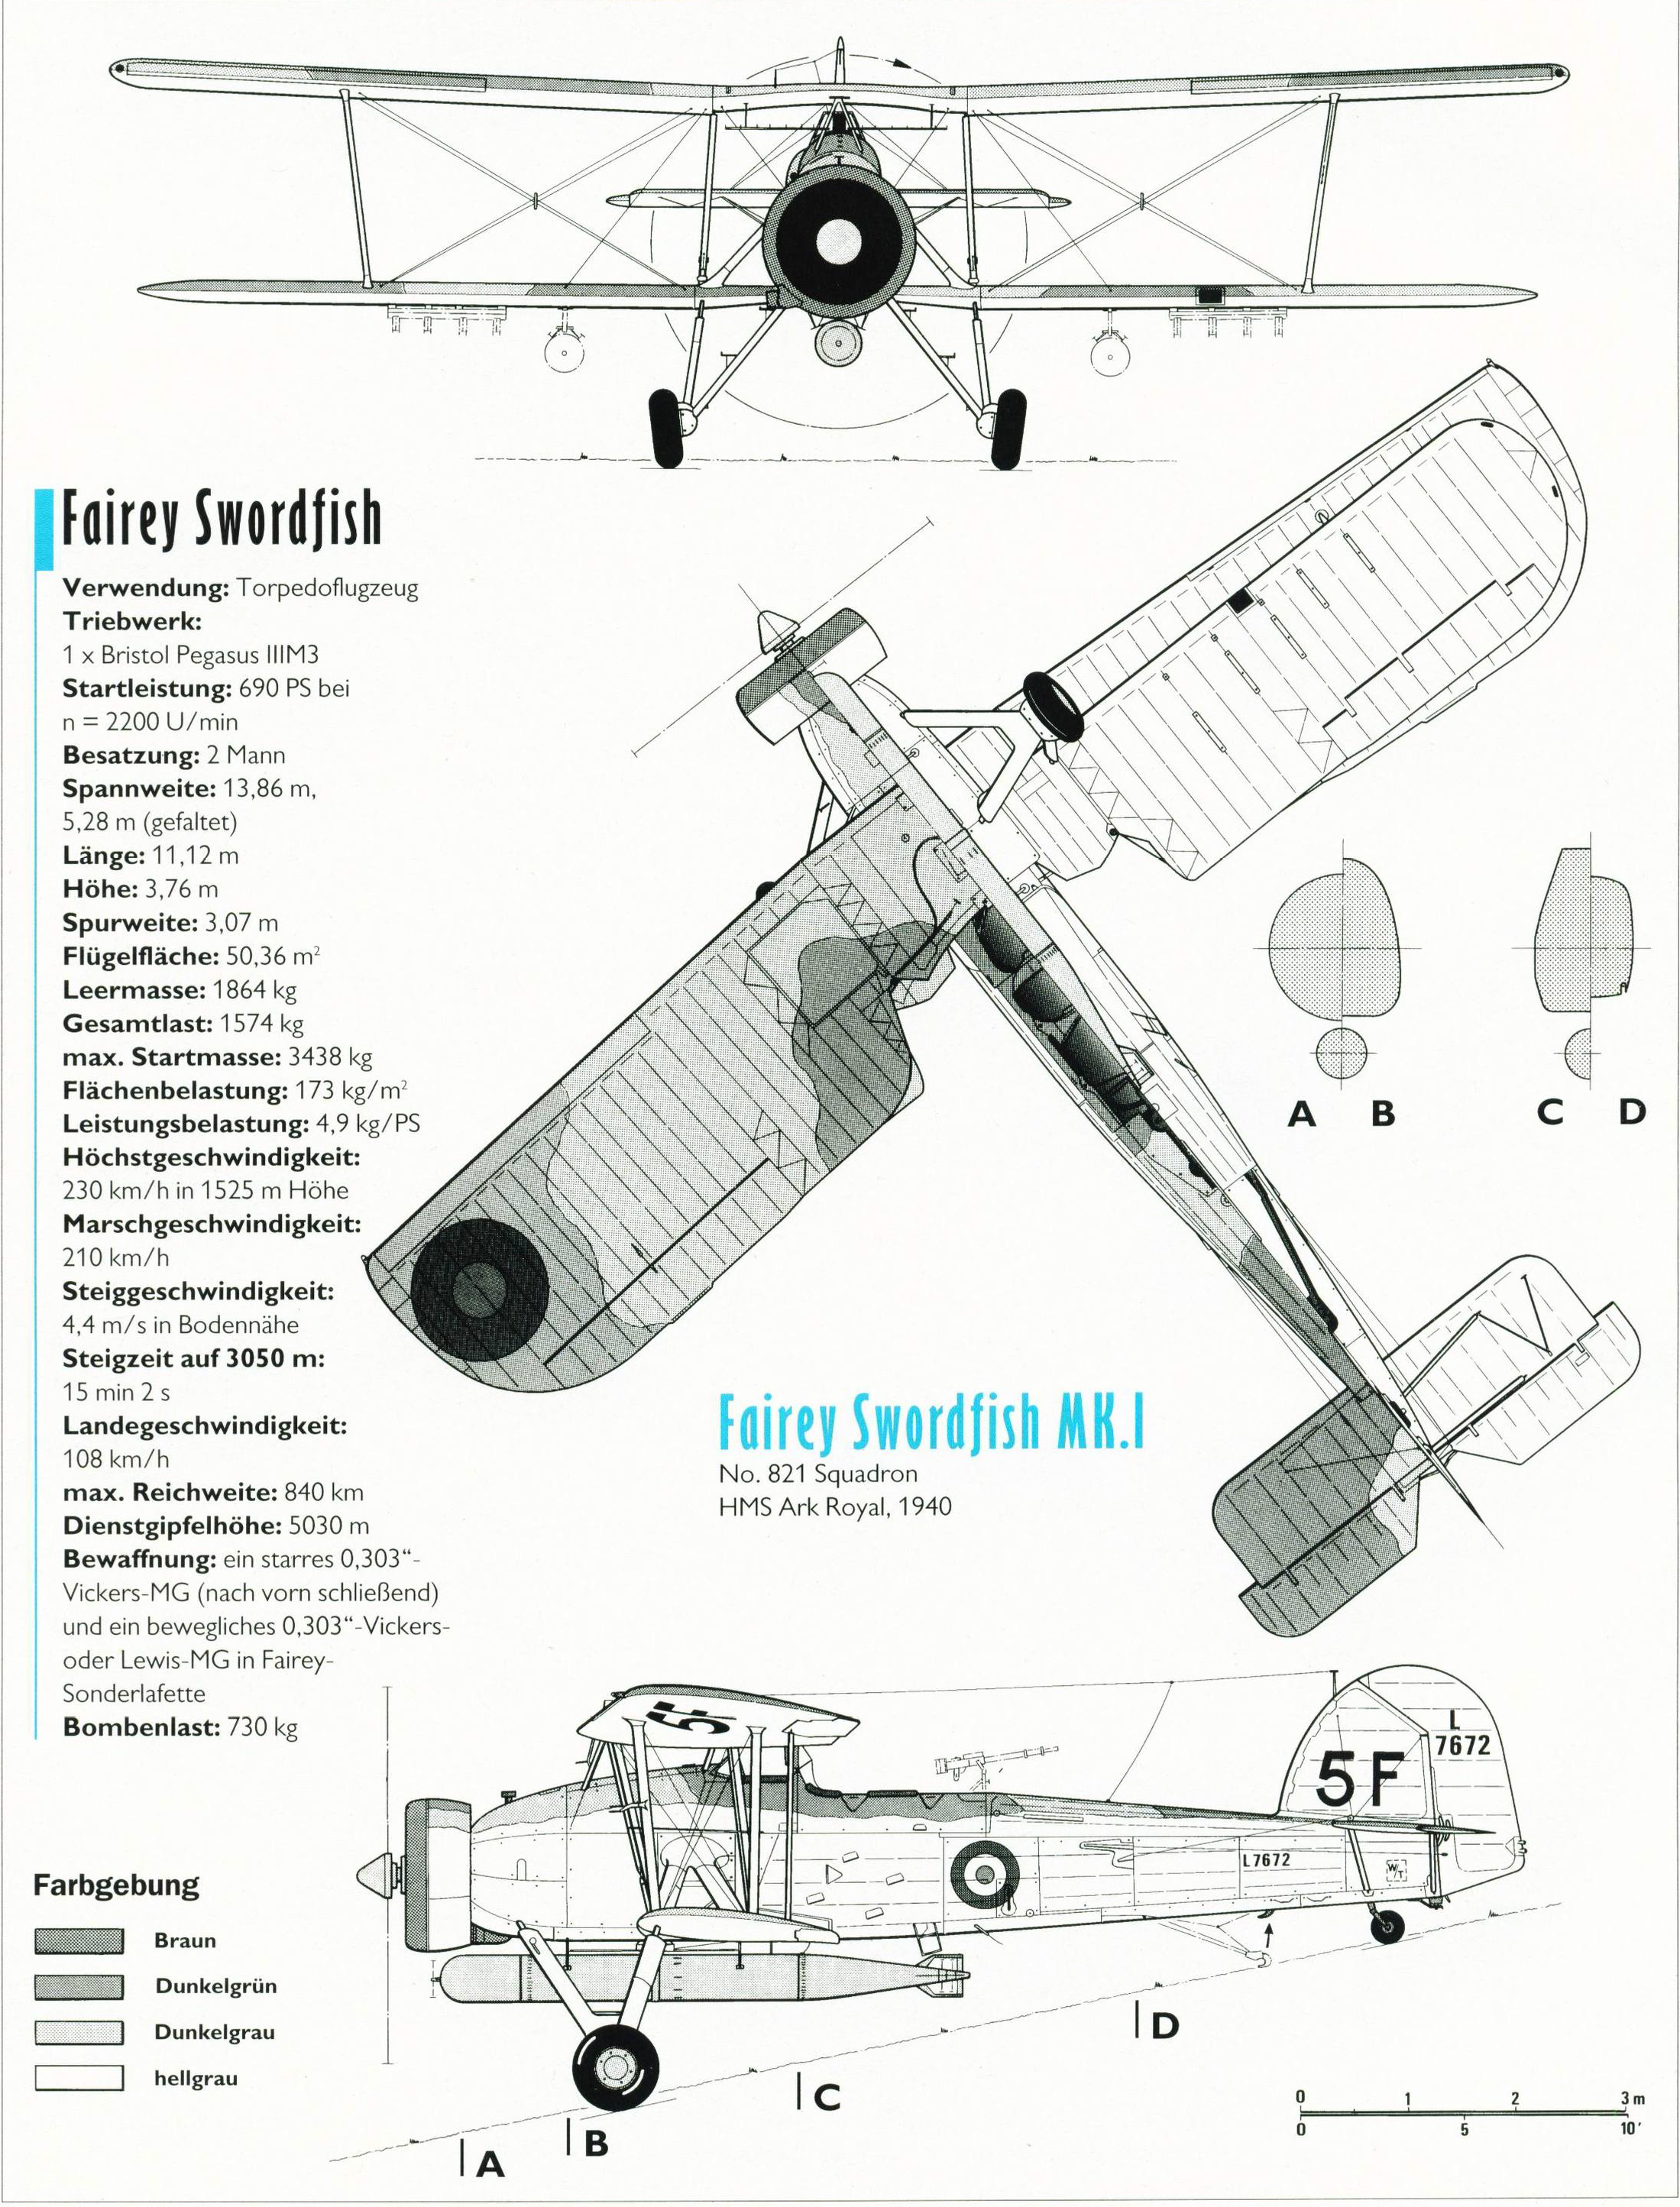 Fairey - Fairey Swordfish Mk1.bmp